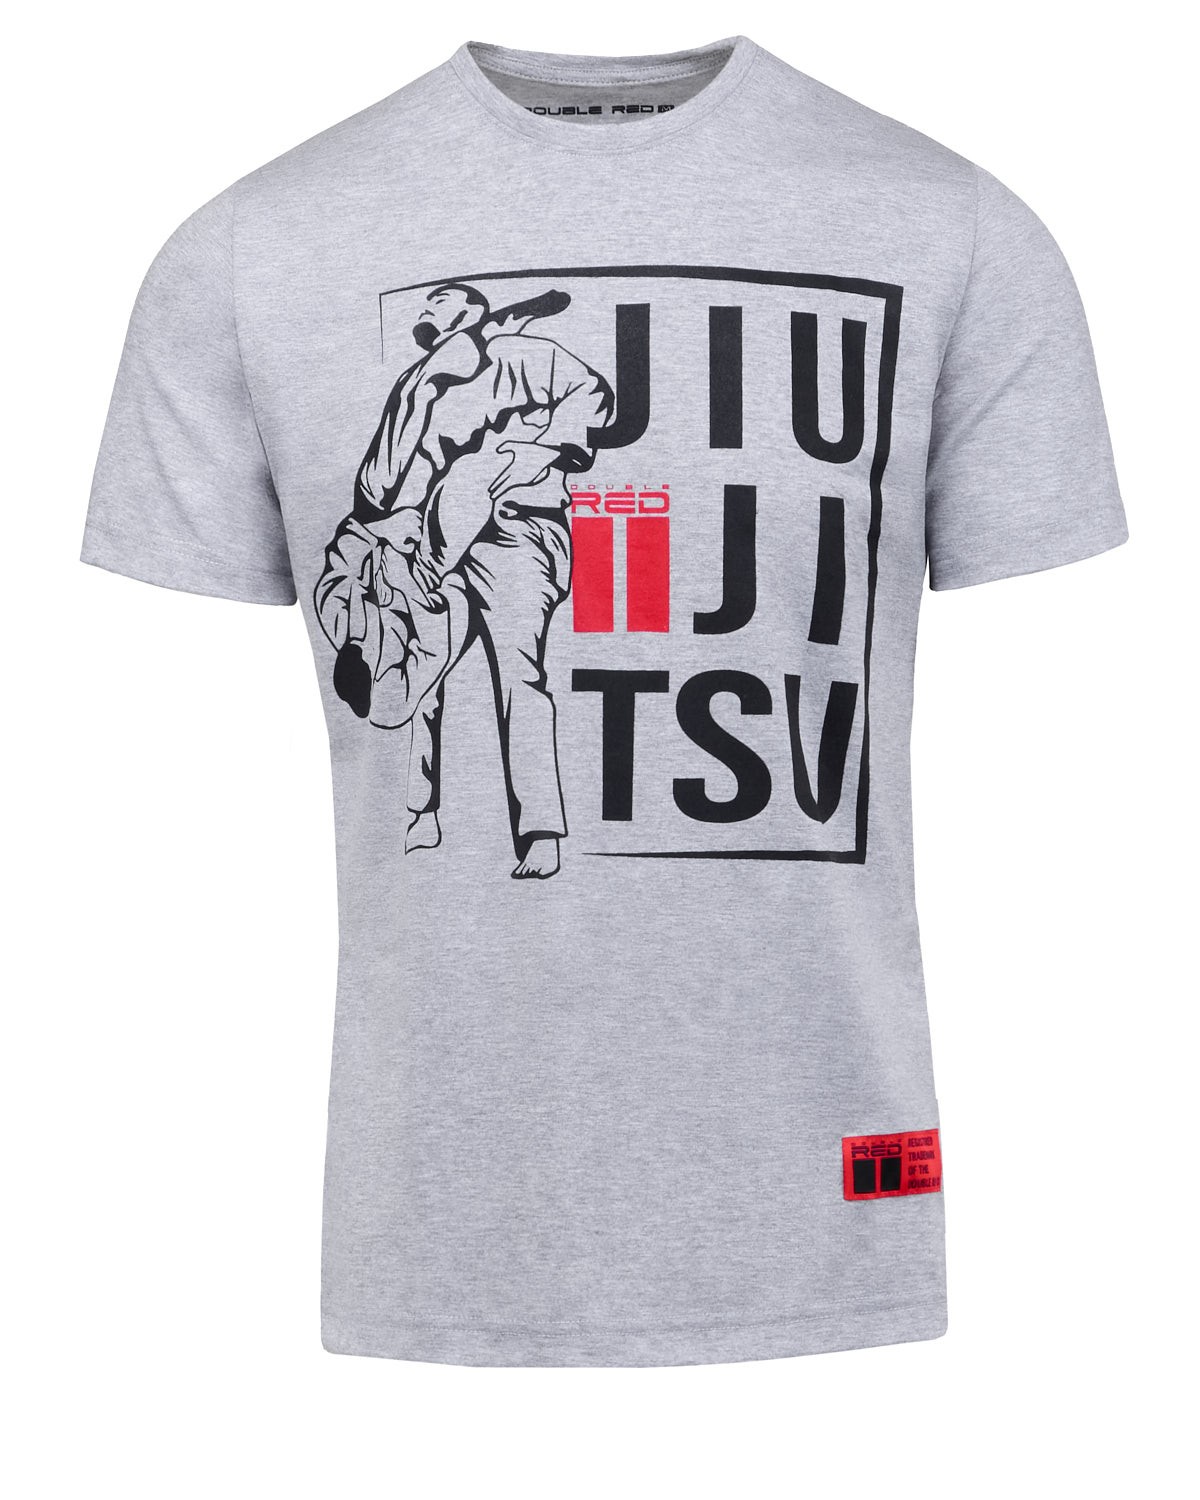 JIU JITSU Grappling T-shirt Grey